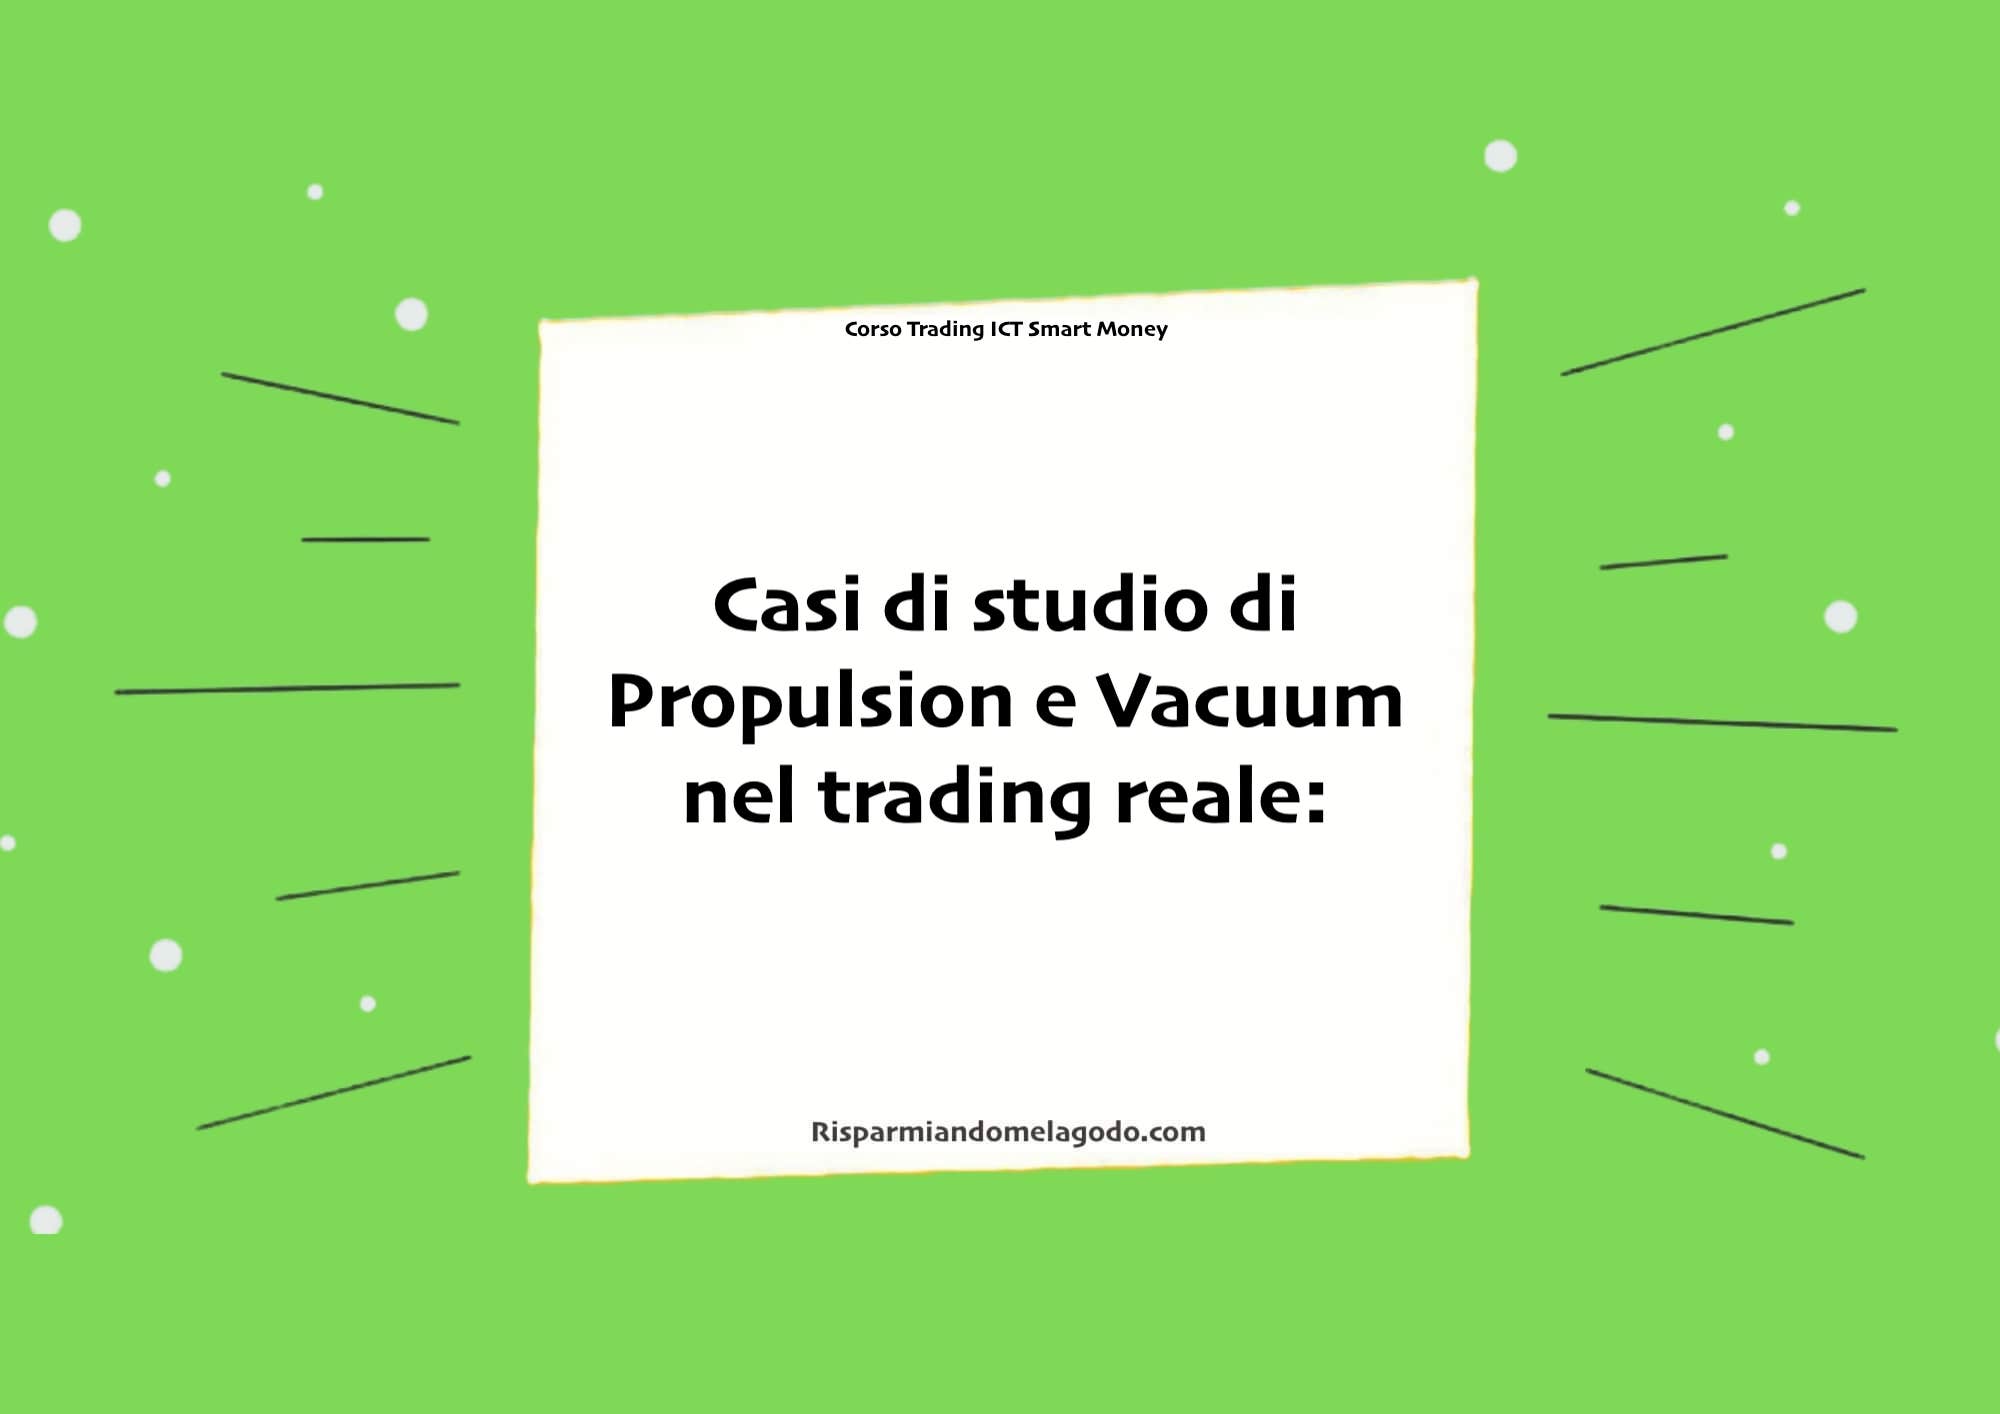 Casi di studio di Propulsion e Vacuum nel trading reale: